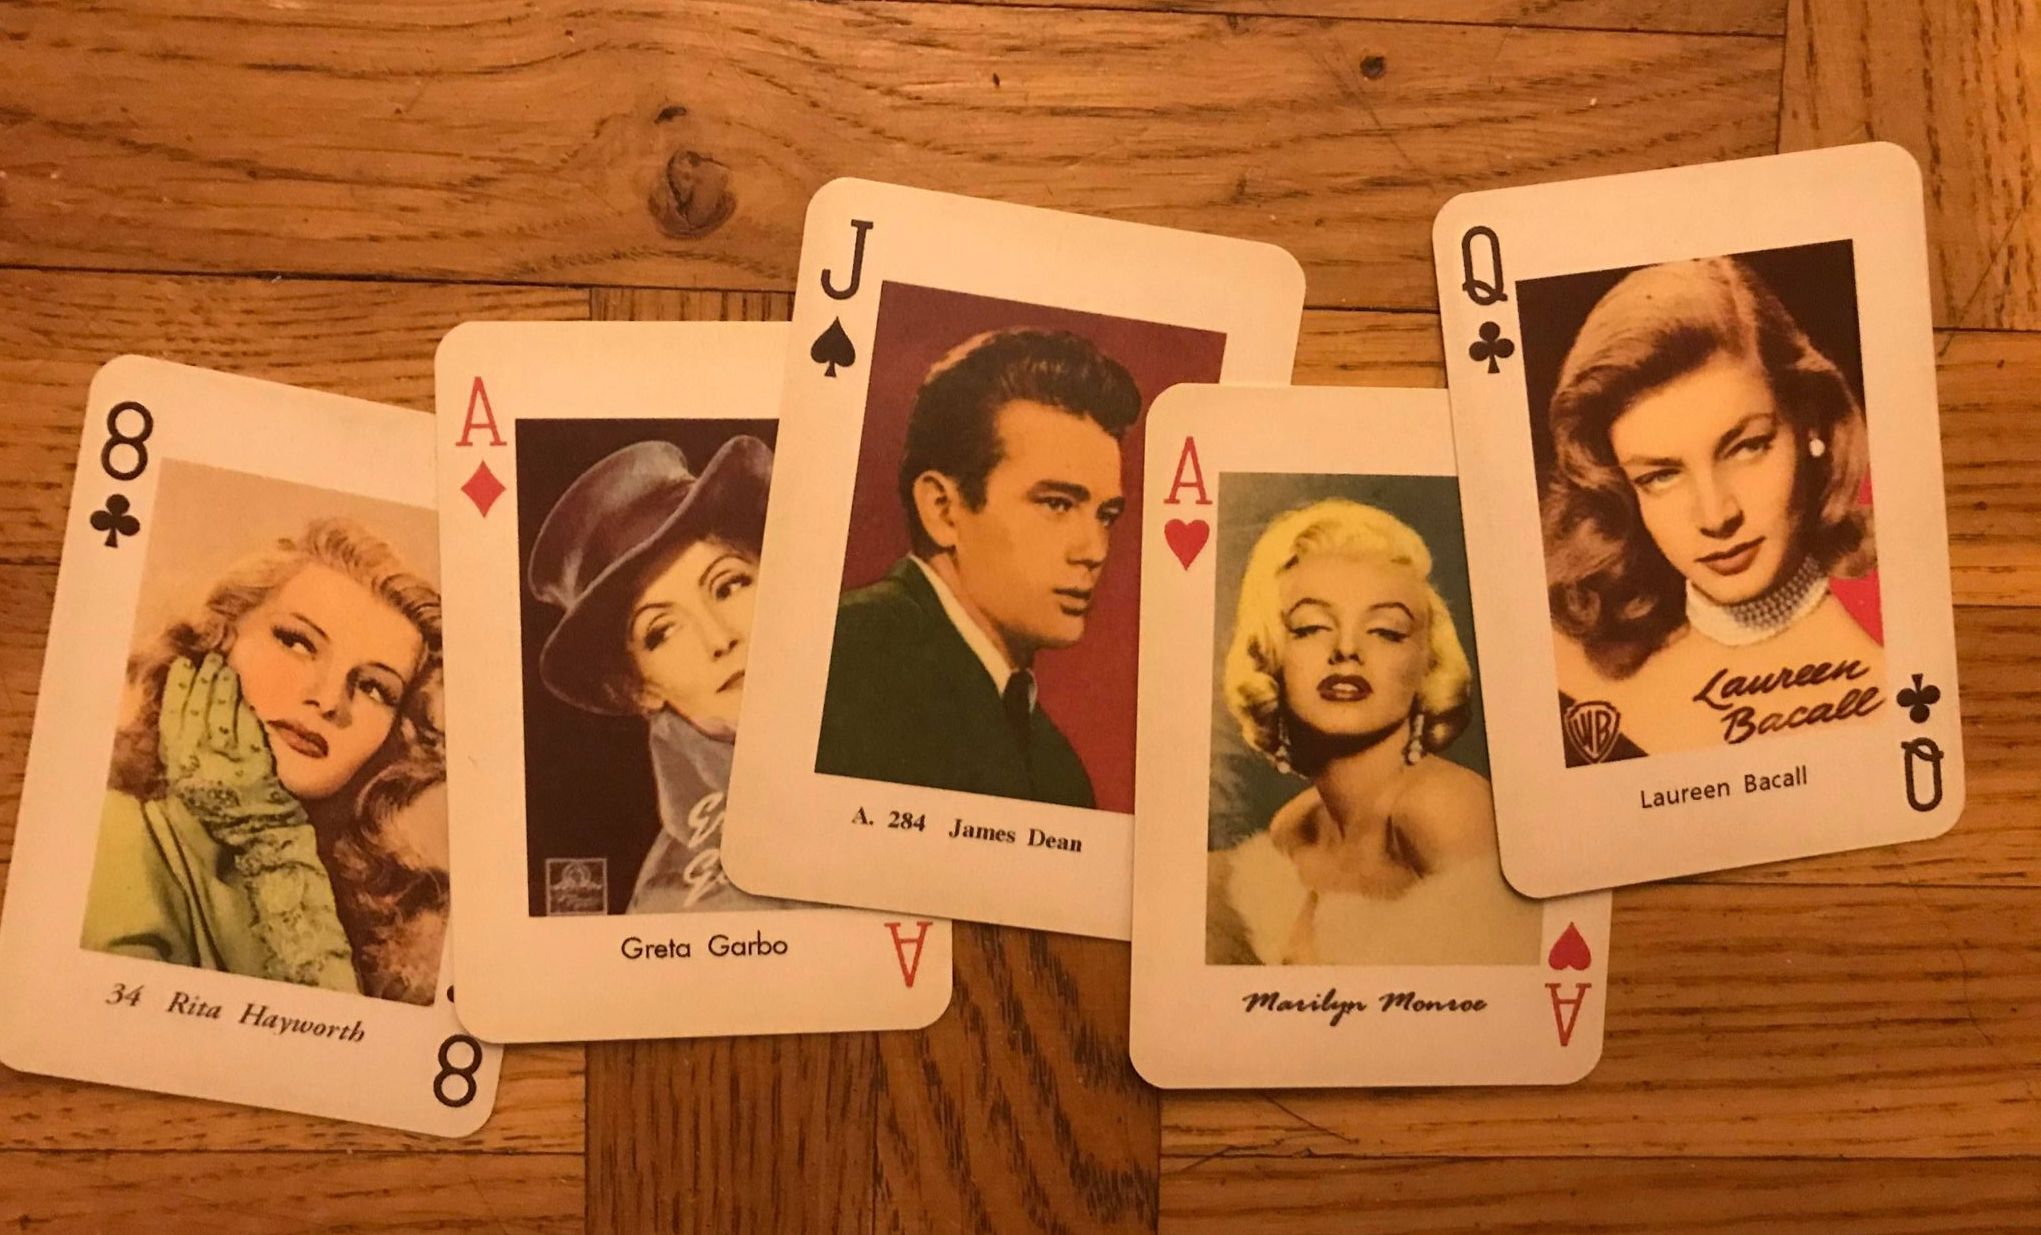 Fem spelkort med bilder på kända skådespelare, bl. a. James Dean och Marilyn Monroe. Denna bild ska symbolisera populärkultur.